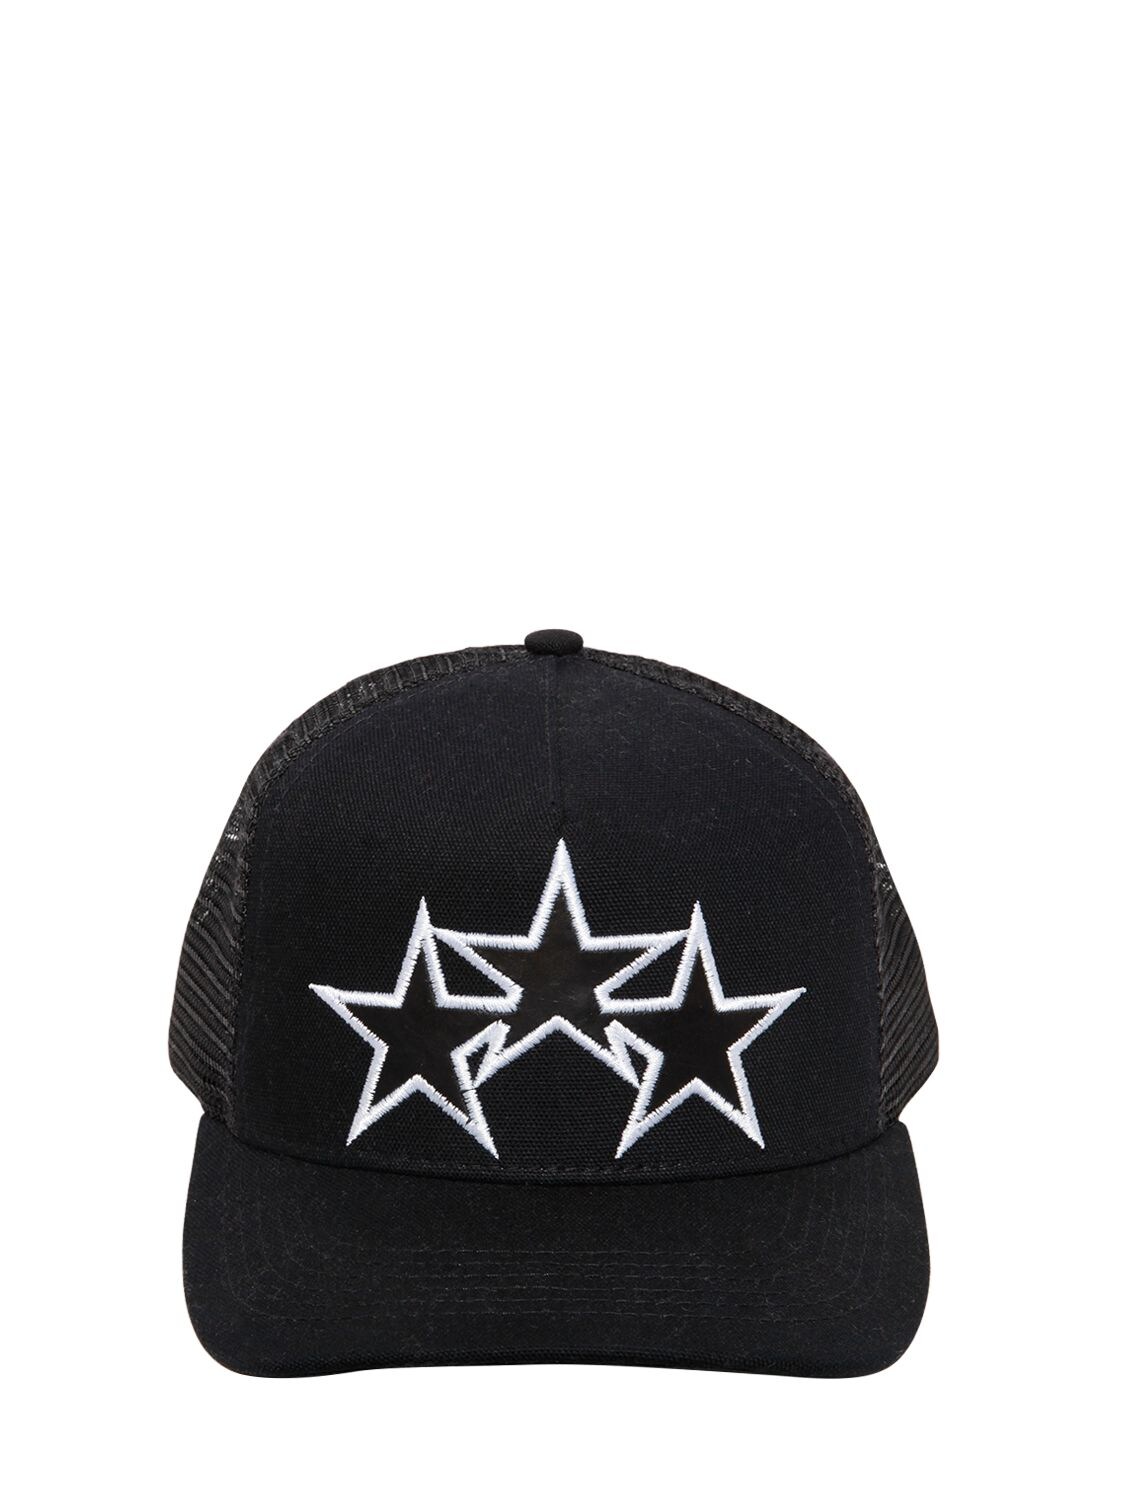 AMIRI STAR EMBROIDERED TRUCKER HAT,67I6TX042-QKXL0